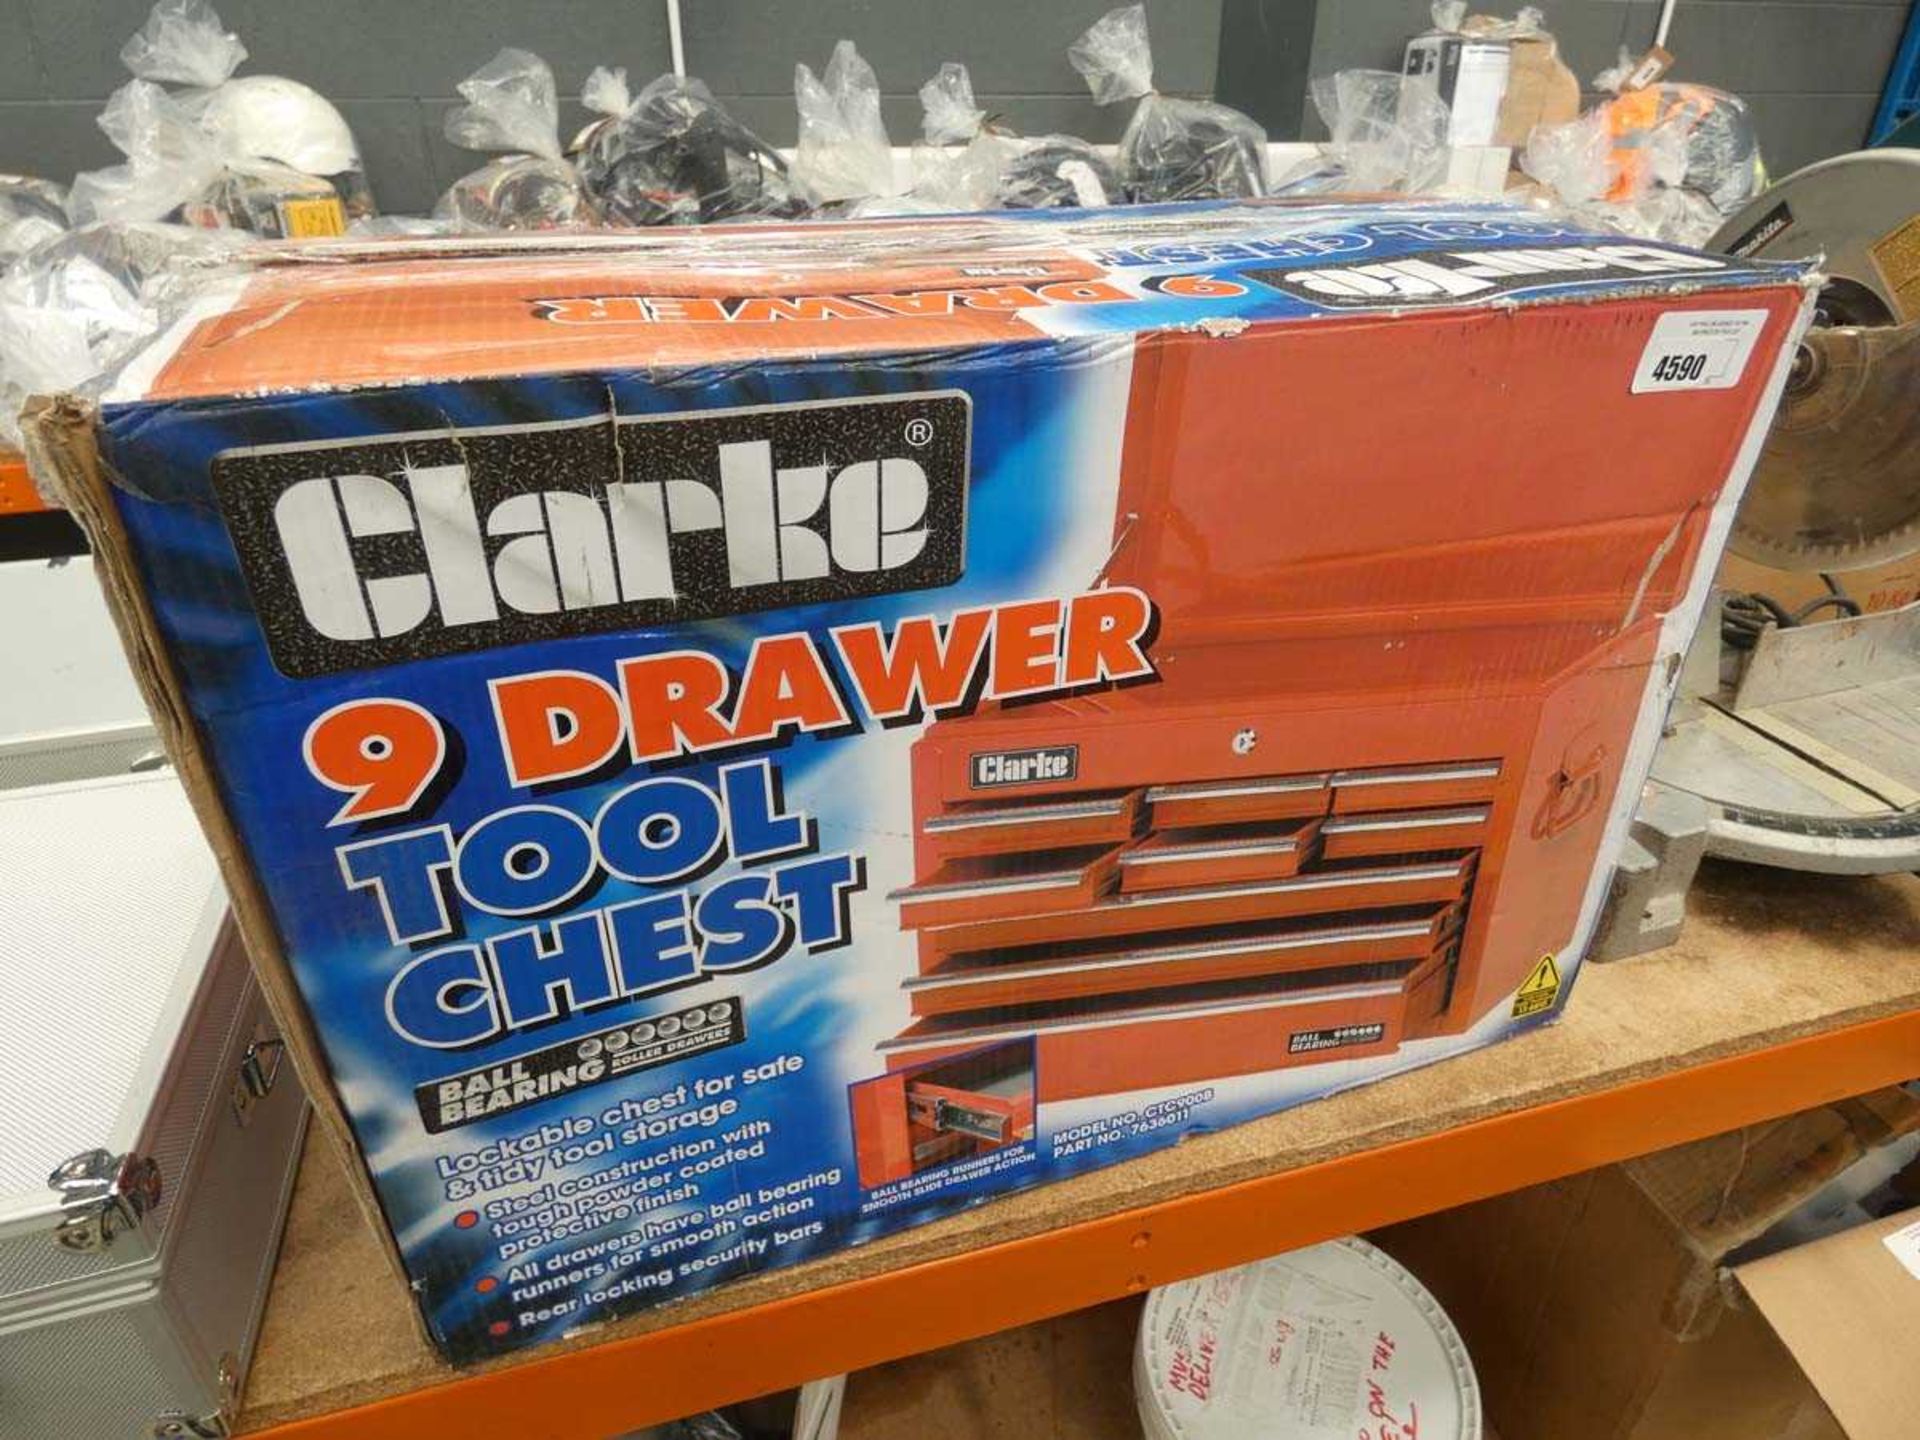 +VAT Boxed Clarke 9-drawer tool chest